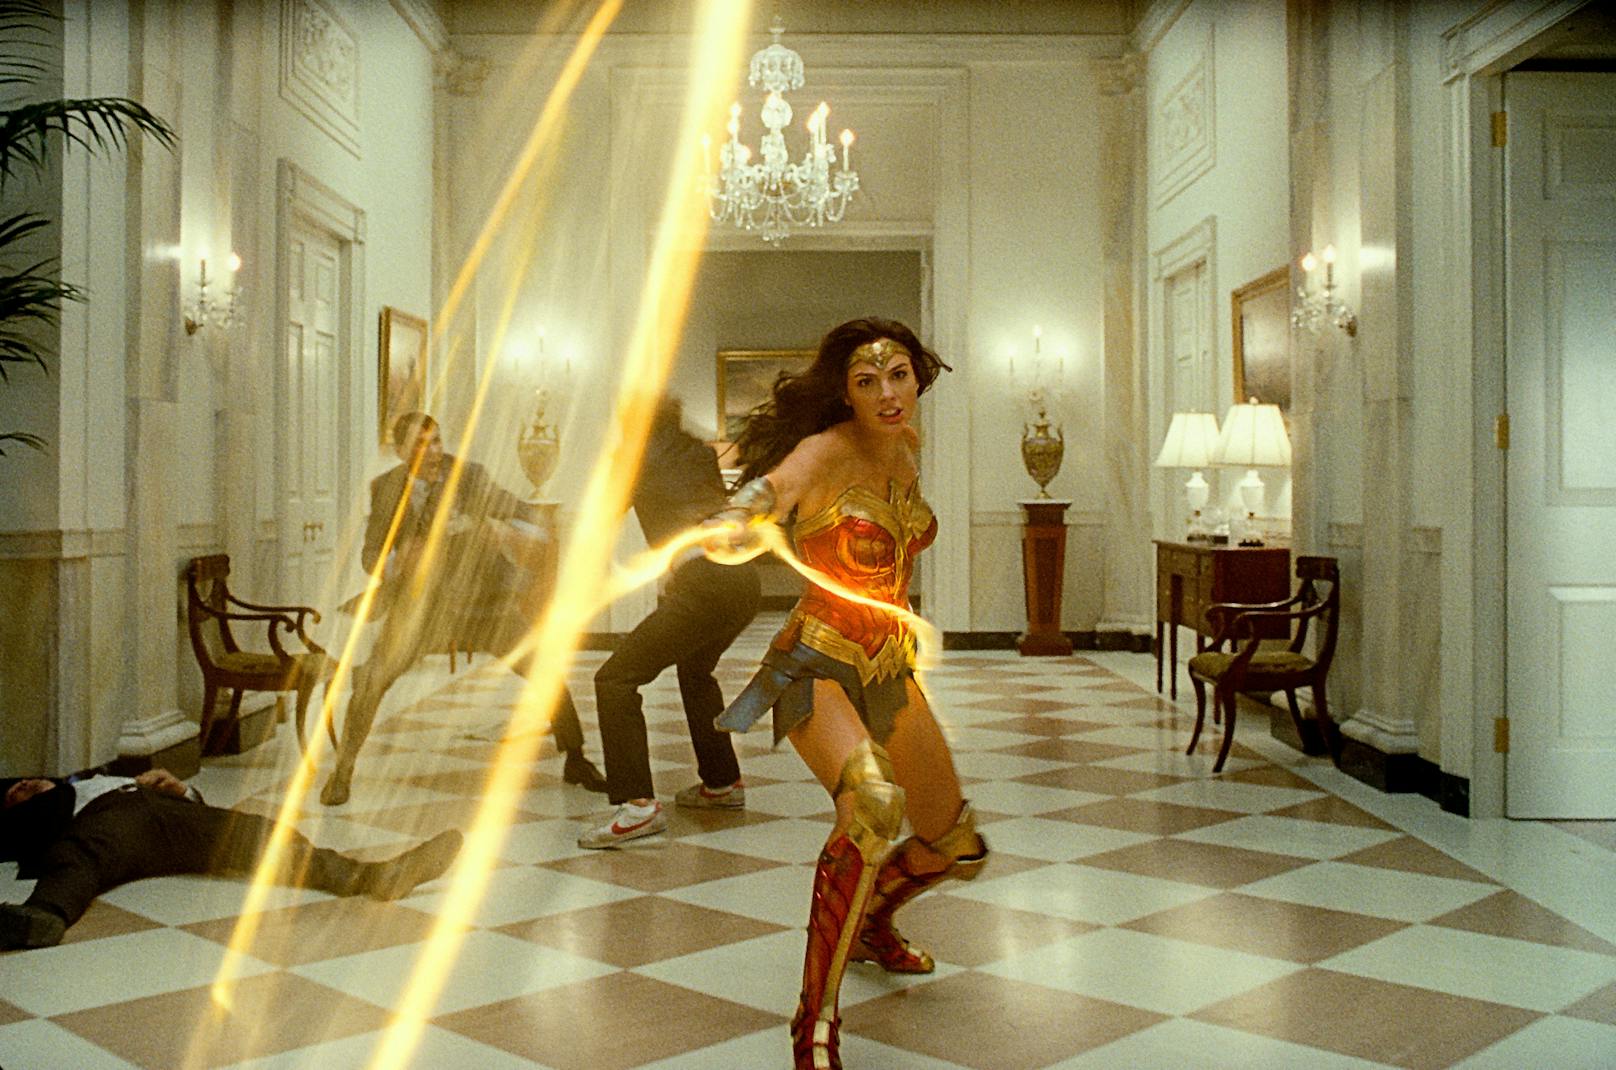 Die unerschrockene Superheldin Wonder Woman (Gal Gadot) wird auch in ihrem nächsten Kino-Abenteuer für das Gute kämpfen.